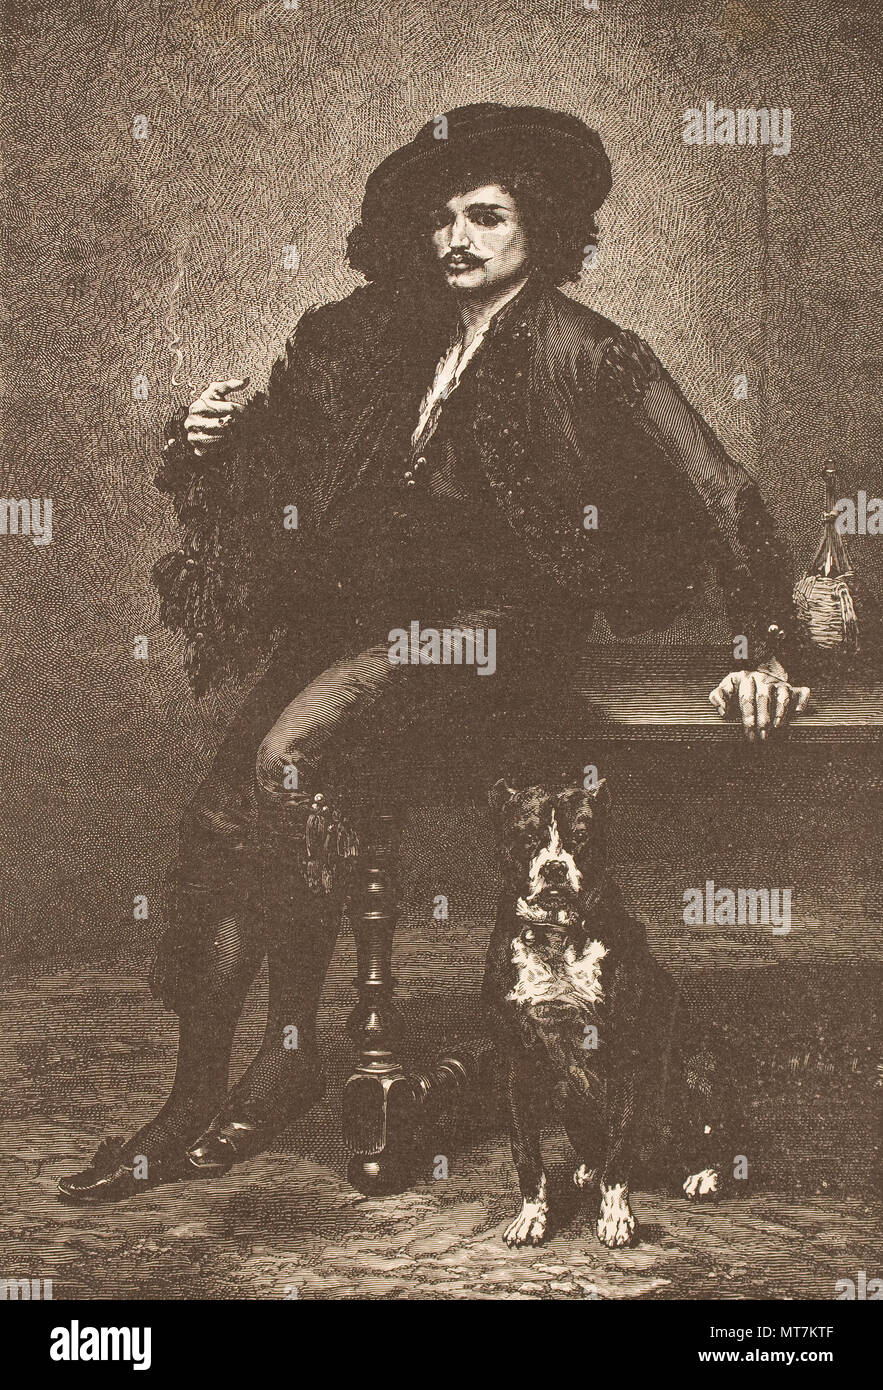 Antoine vollon. Copia fotografica di un ritratto di un uomo 1878 incisione. Spagnolo, senza data Foto Stock